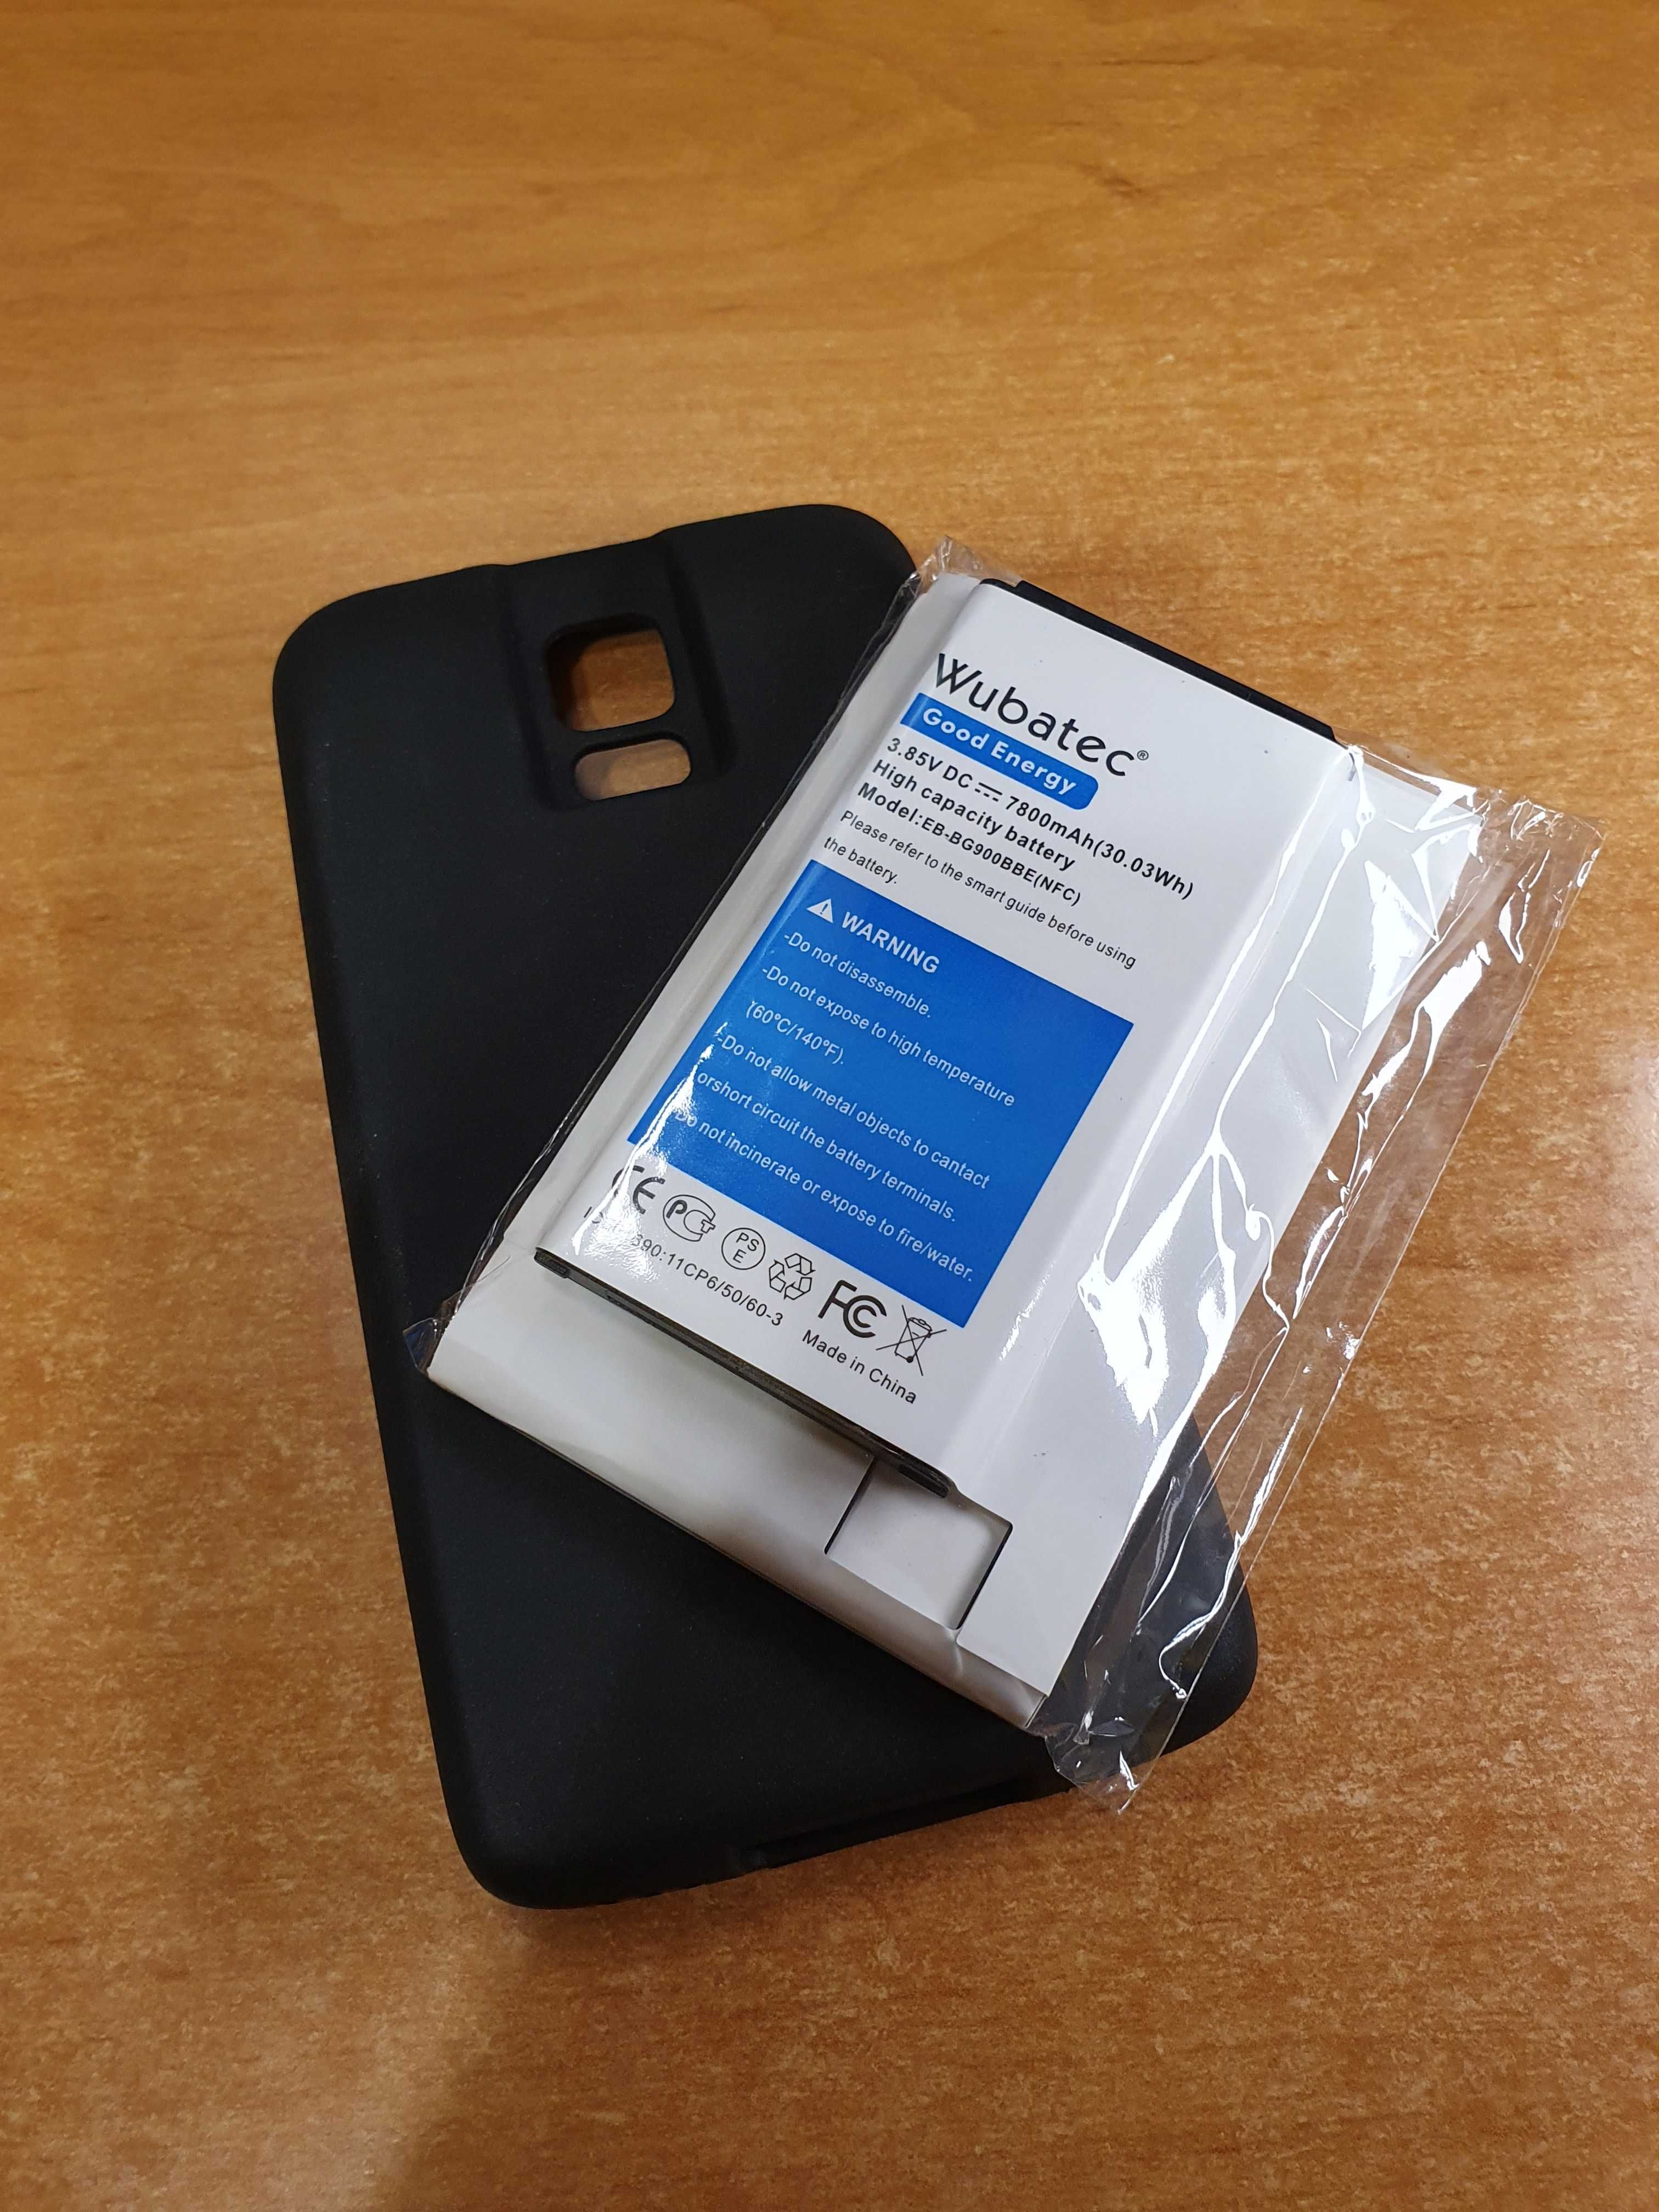 solidarity Illuminate disguise Duża bateria do telefonu Samsung S5 oraz S5 Neo - 7800mAh akumulator  Kędzierzyn-Koźle Śródmieście • OLX.pl